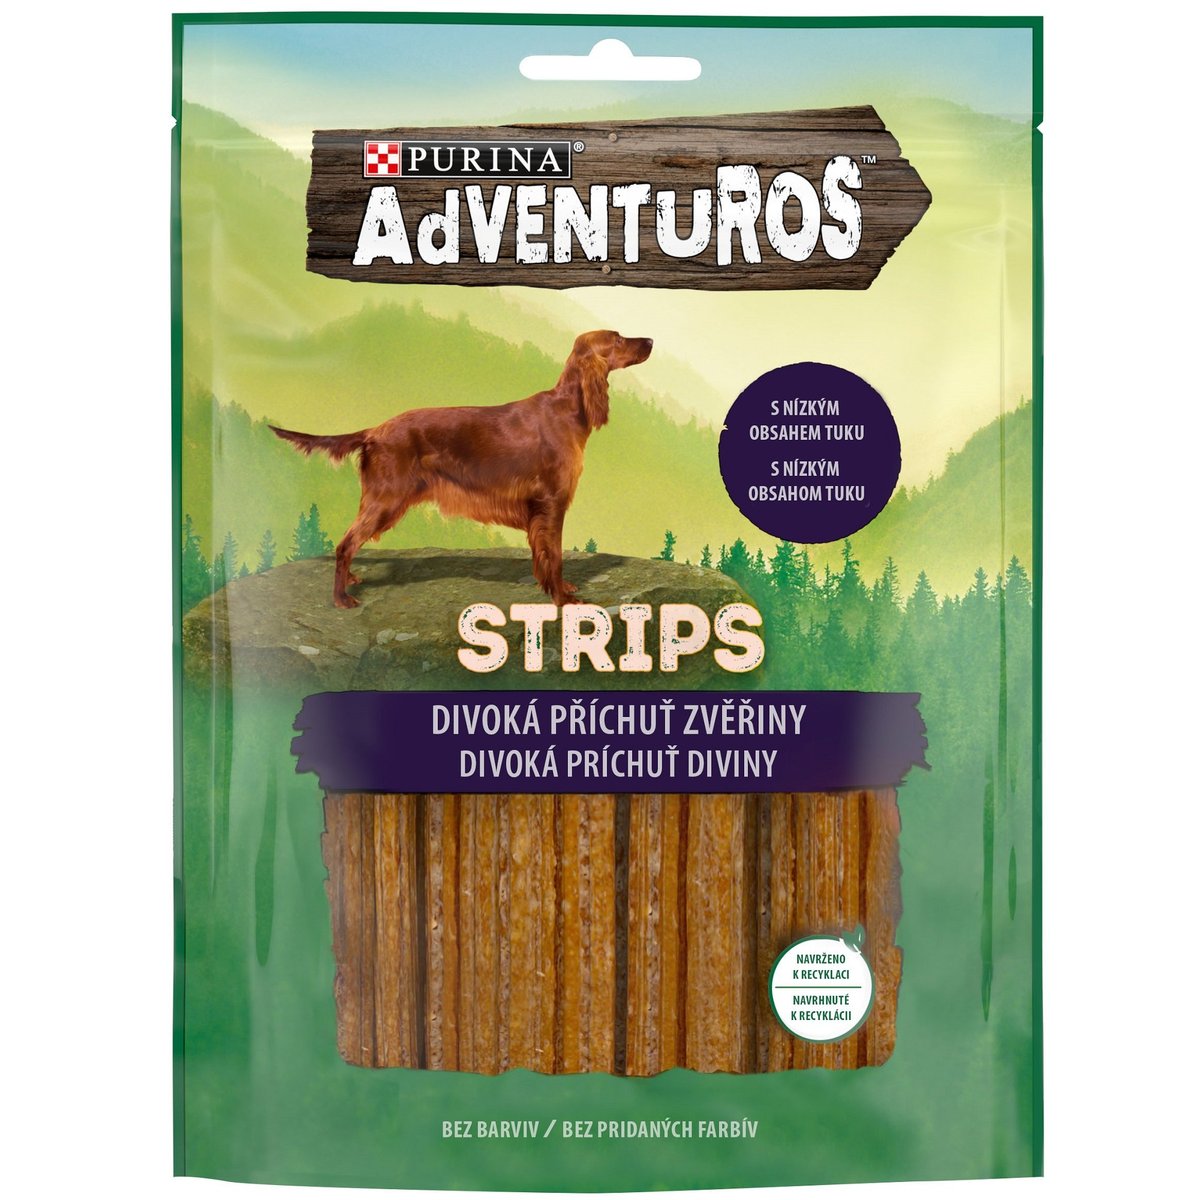 Adventuros Strips zvěřina pro psy